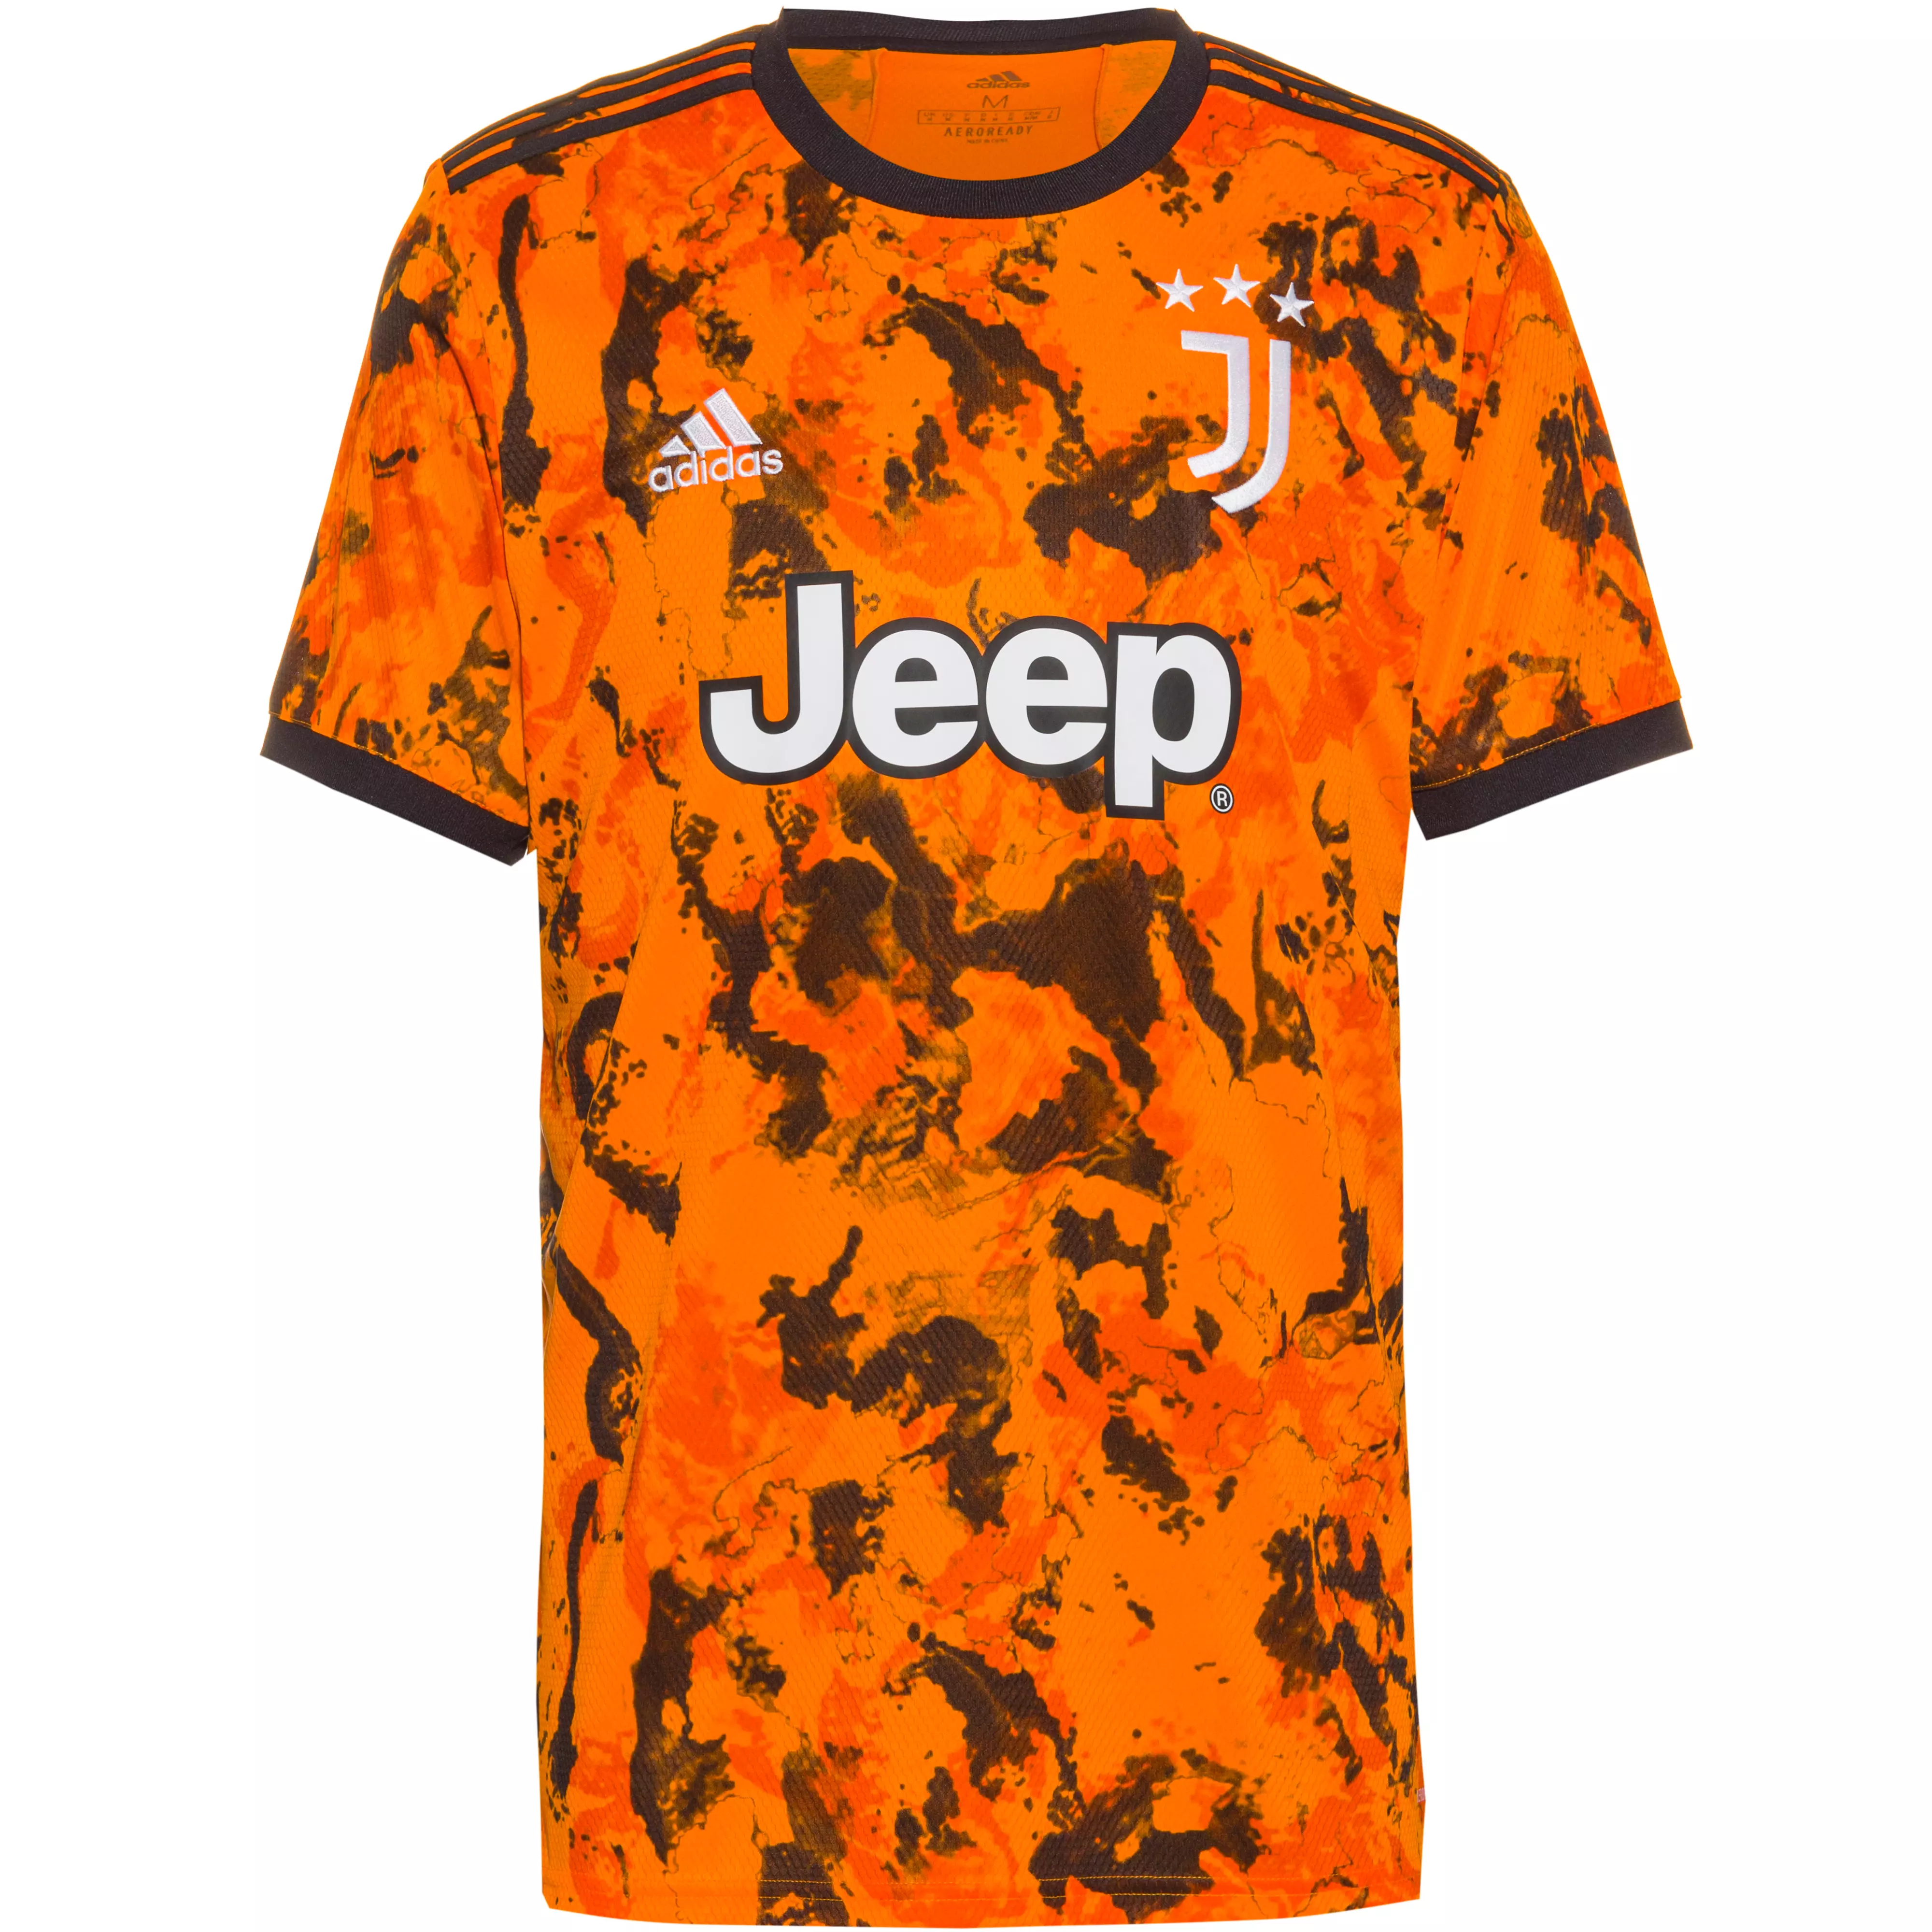 Adidas Juventus Turin 20 21 3rd Trikot Herren Bahia Orange Im Online Shop Von Sportscheck Kaufen